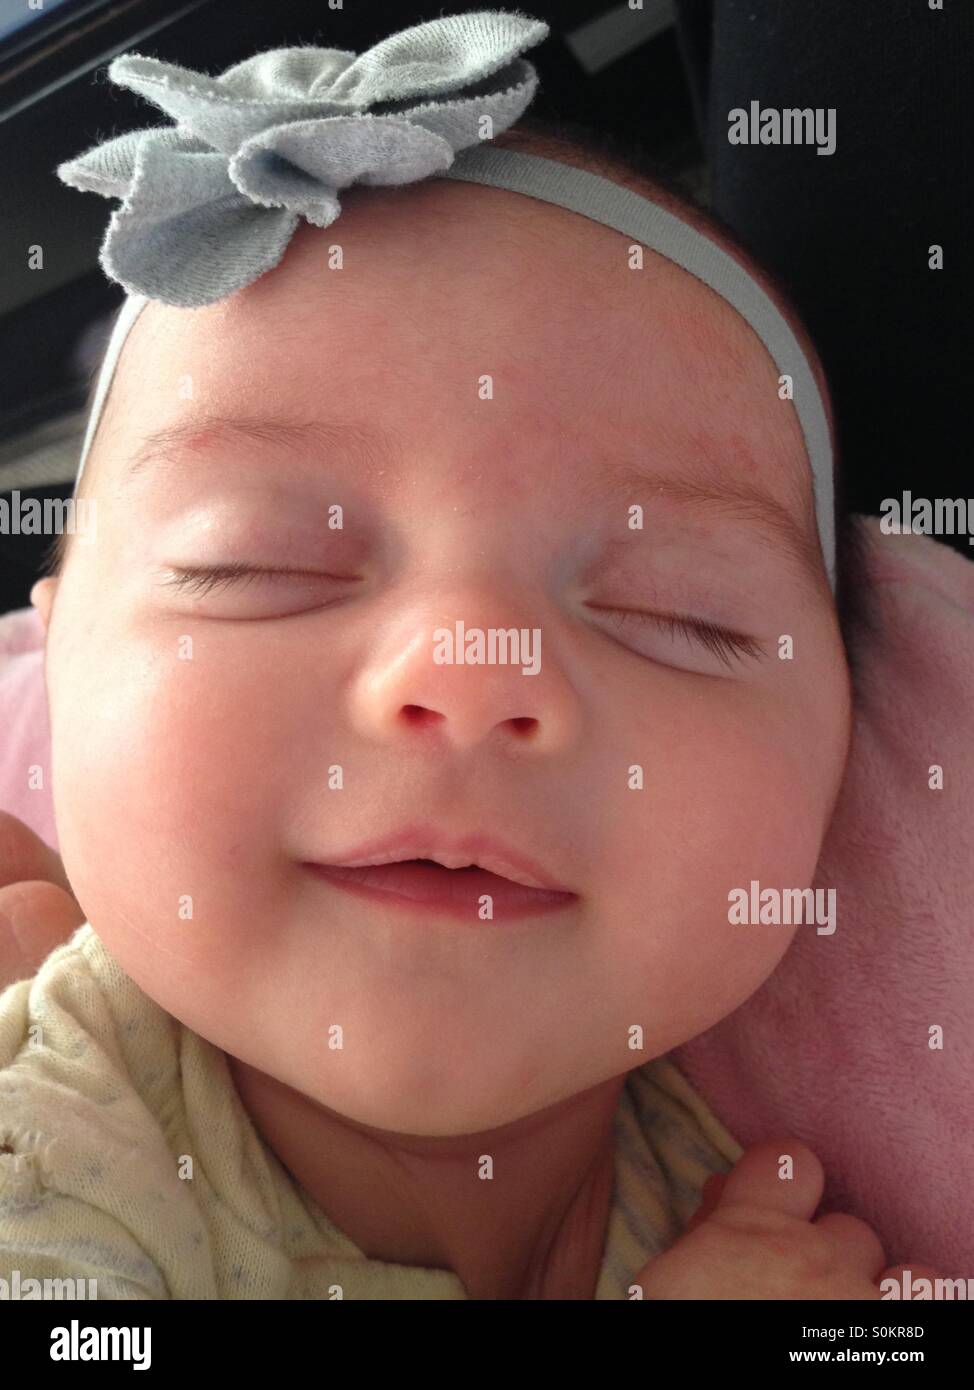 Smiling newborn baby Stock Photo